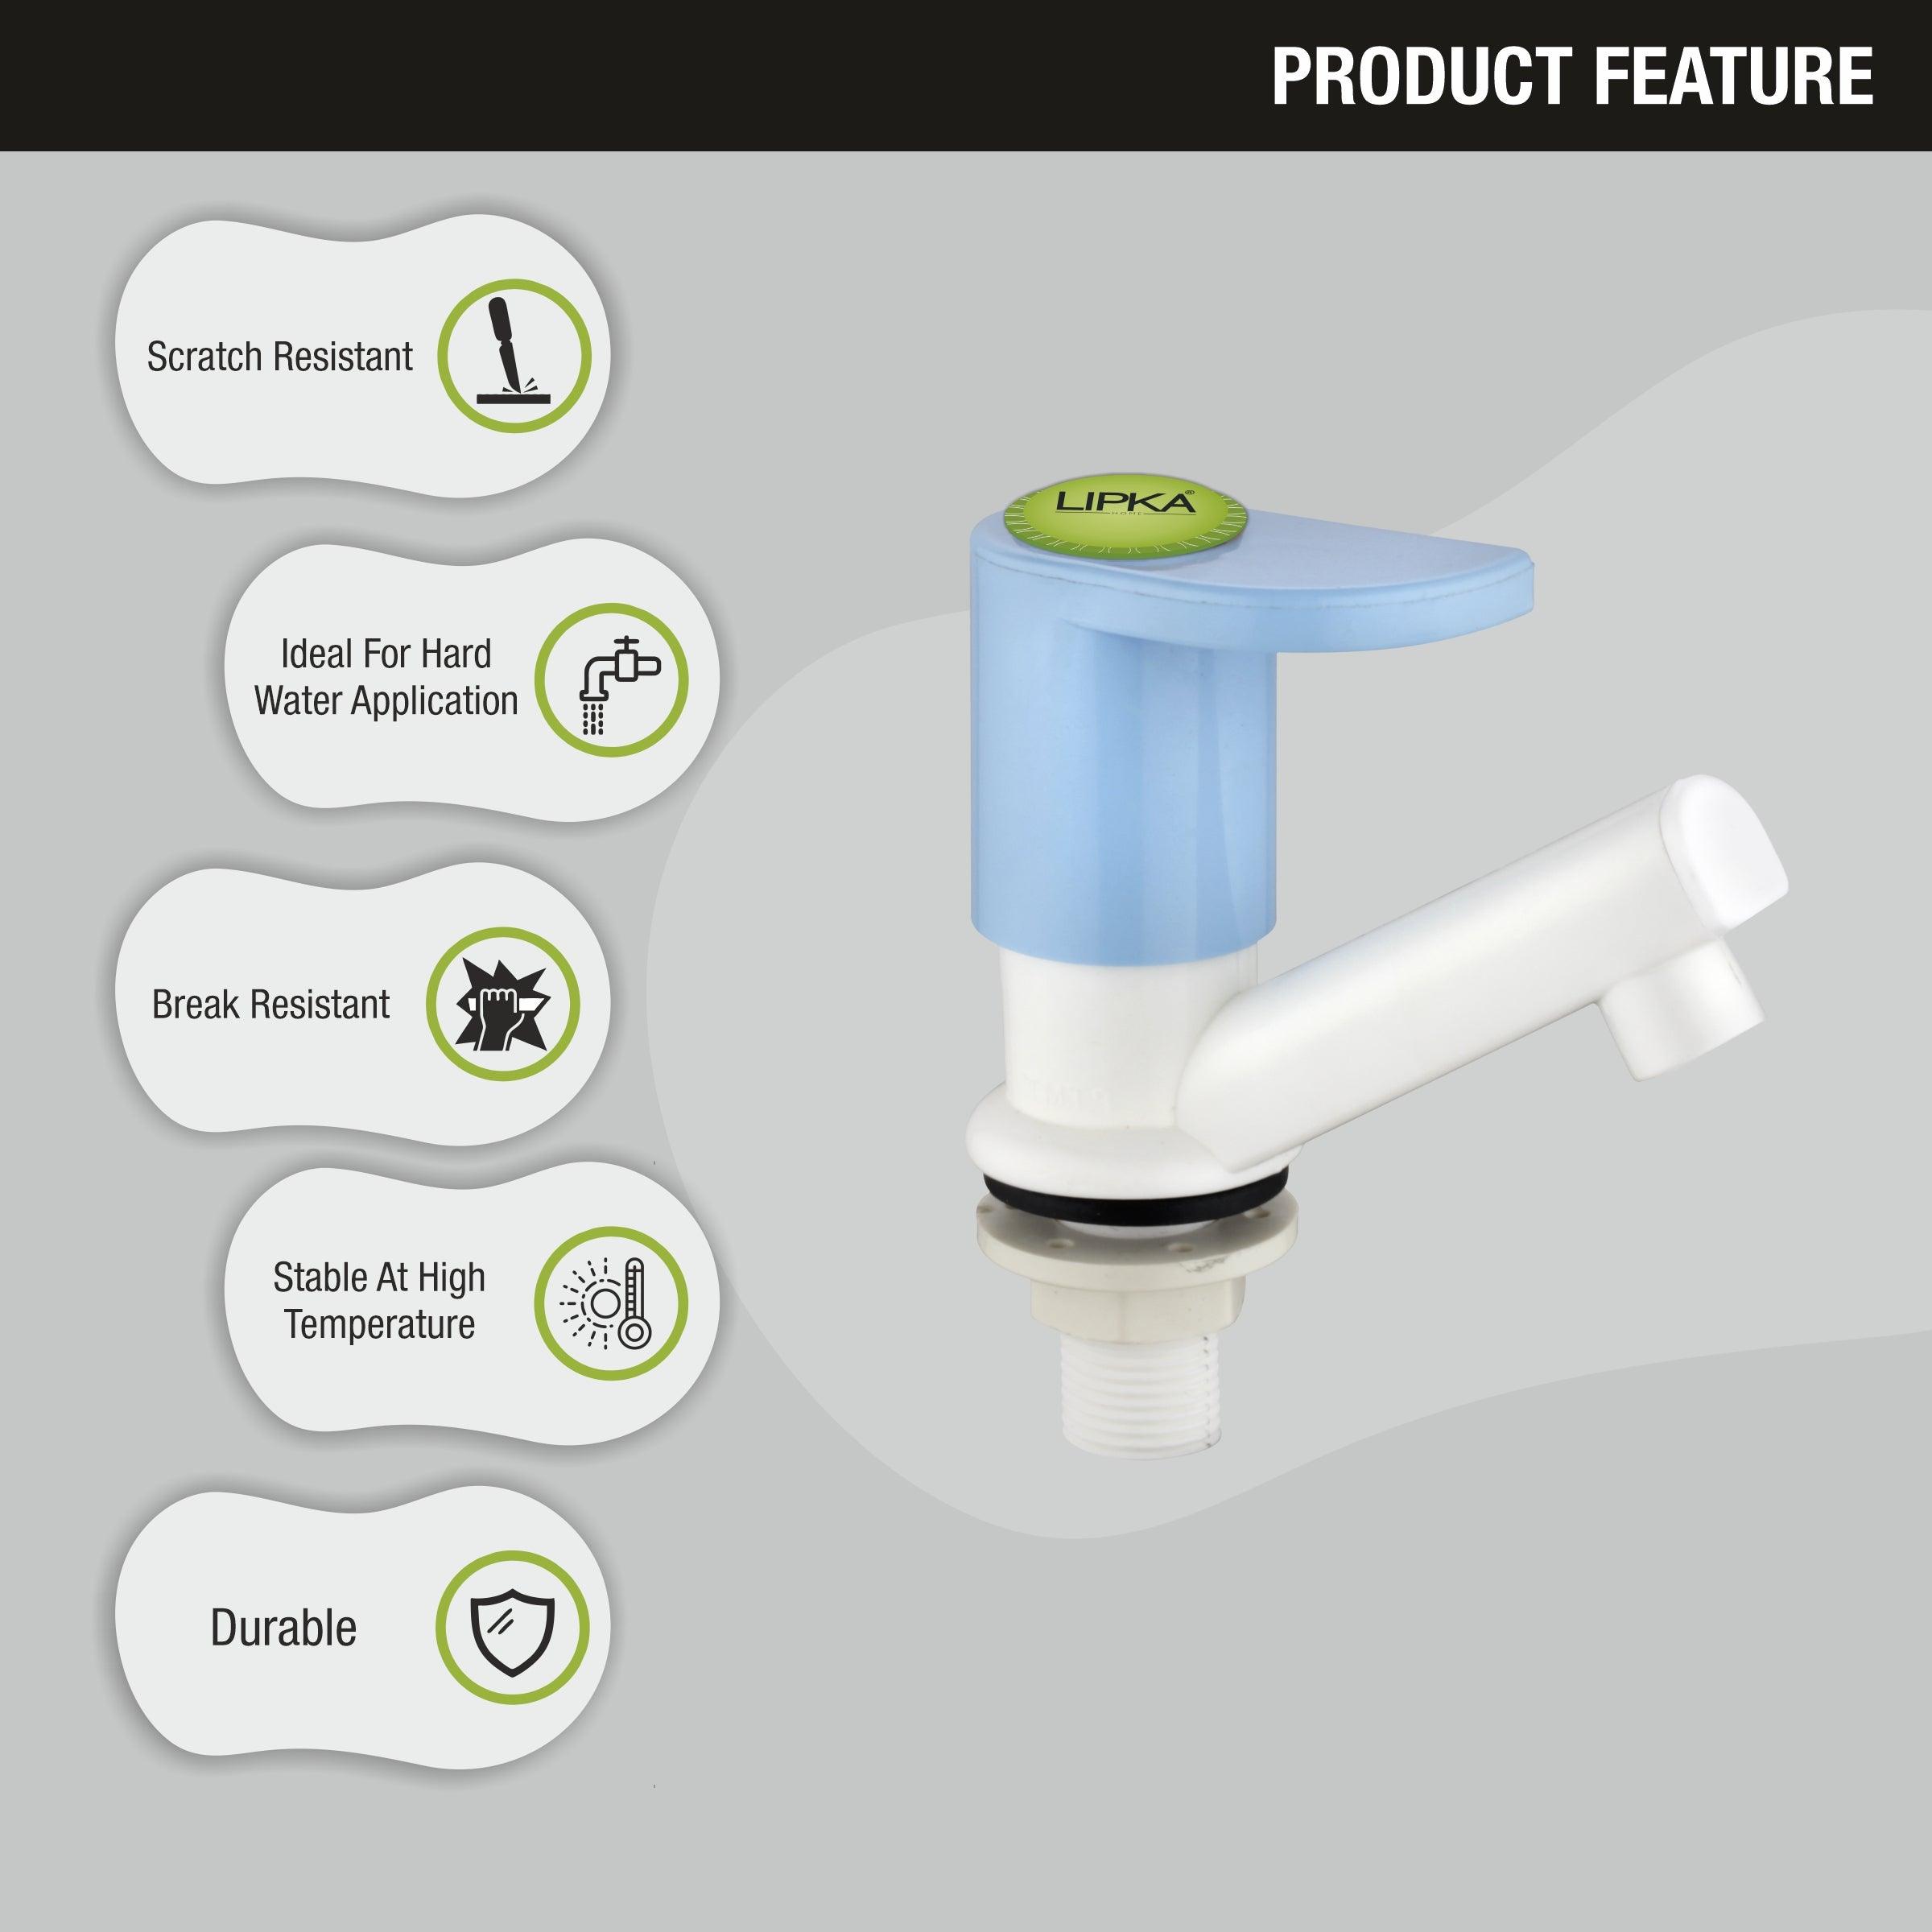 Sky Pillar Tap PTMT Faucet features